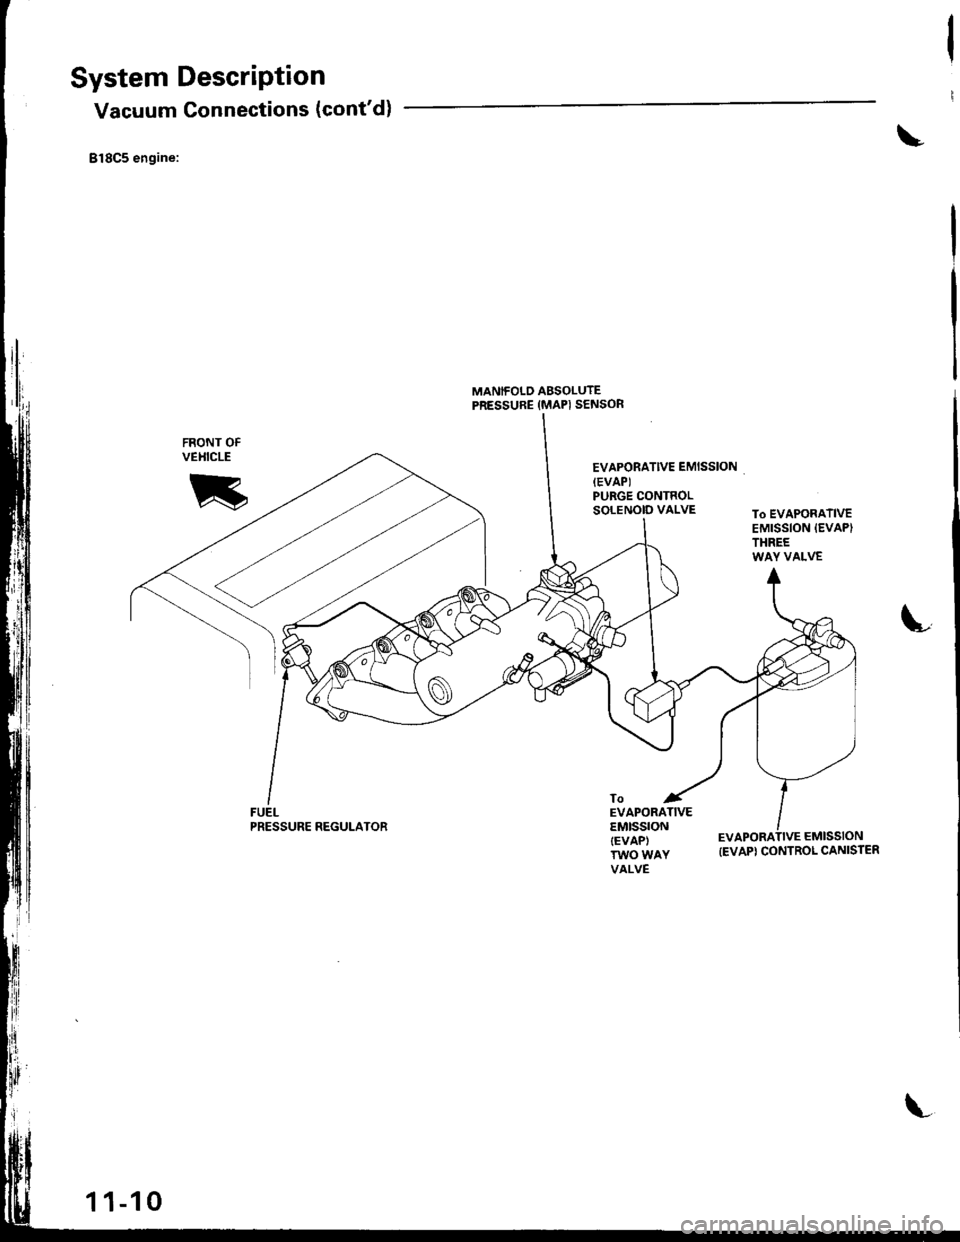 HONDA INTEGRA 1998 4.G User Guide System DescriPtion
Vacuum Connections (contd)
Bl8C5 engine:
FUELPRESSURE REGULATOR
MANIFOLD ABSOLUTEPRESSURE (MAPI SENSOR
EVAPORATIVE EMISSIONIEVAPIPURGE CONTROLSOLENOID VALVETo EVAPORATIVEEMISSION I